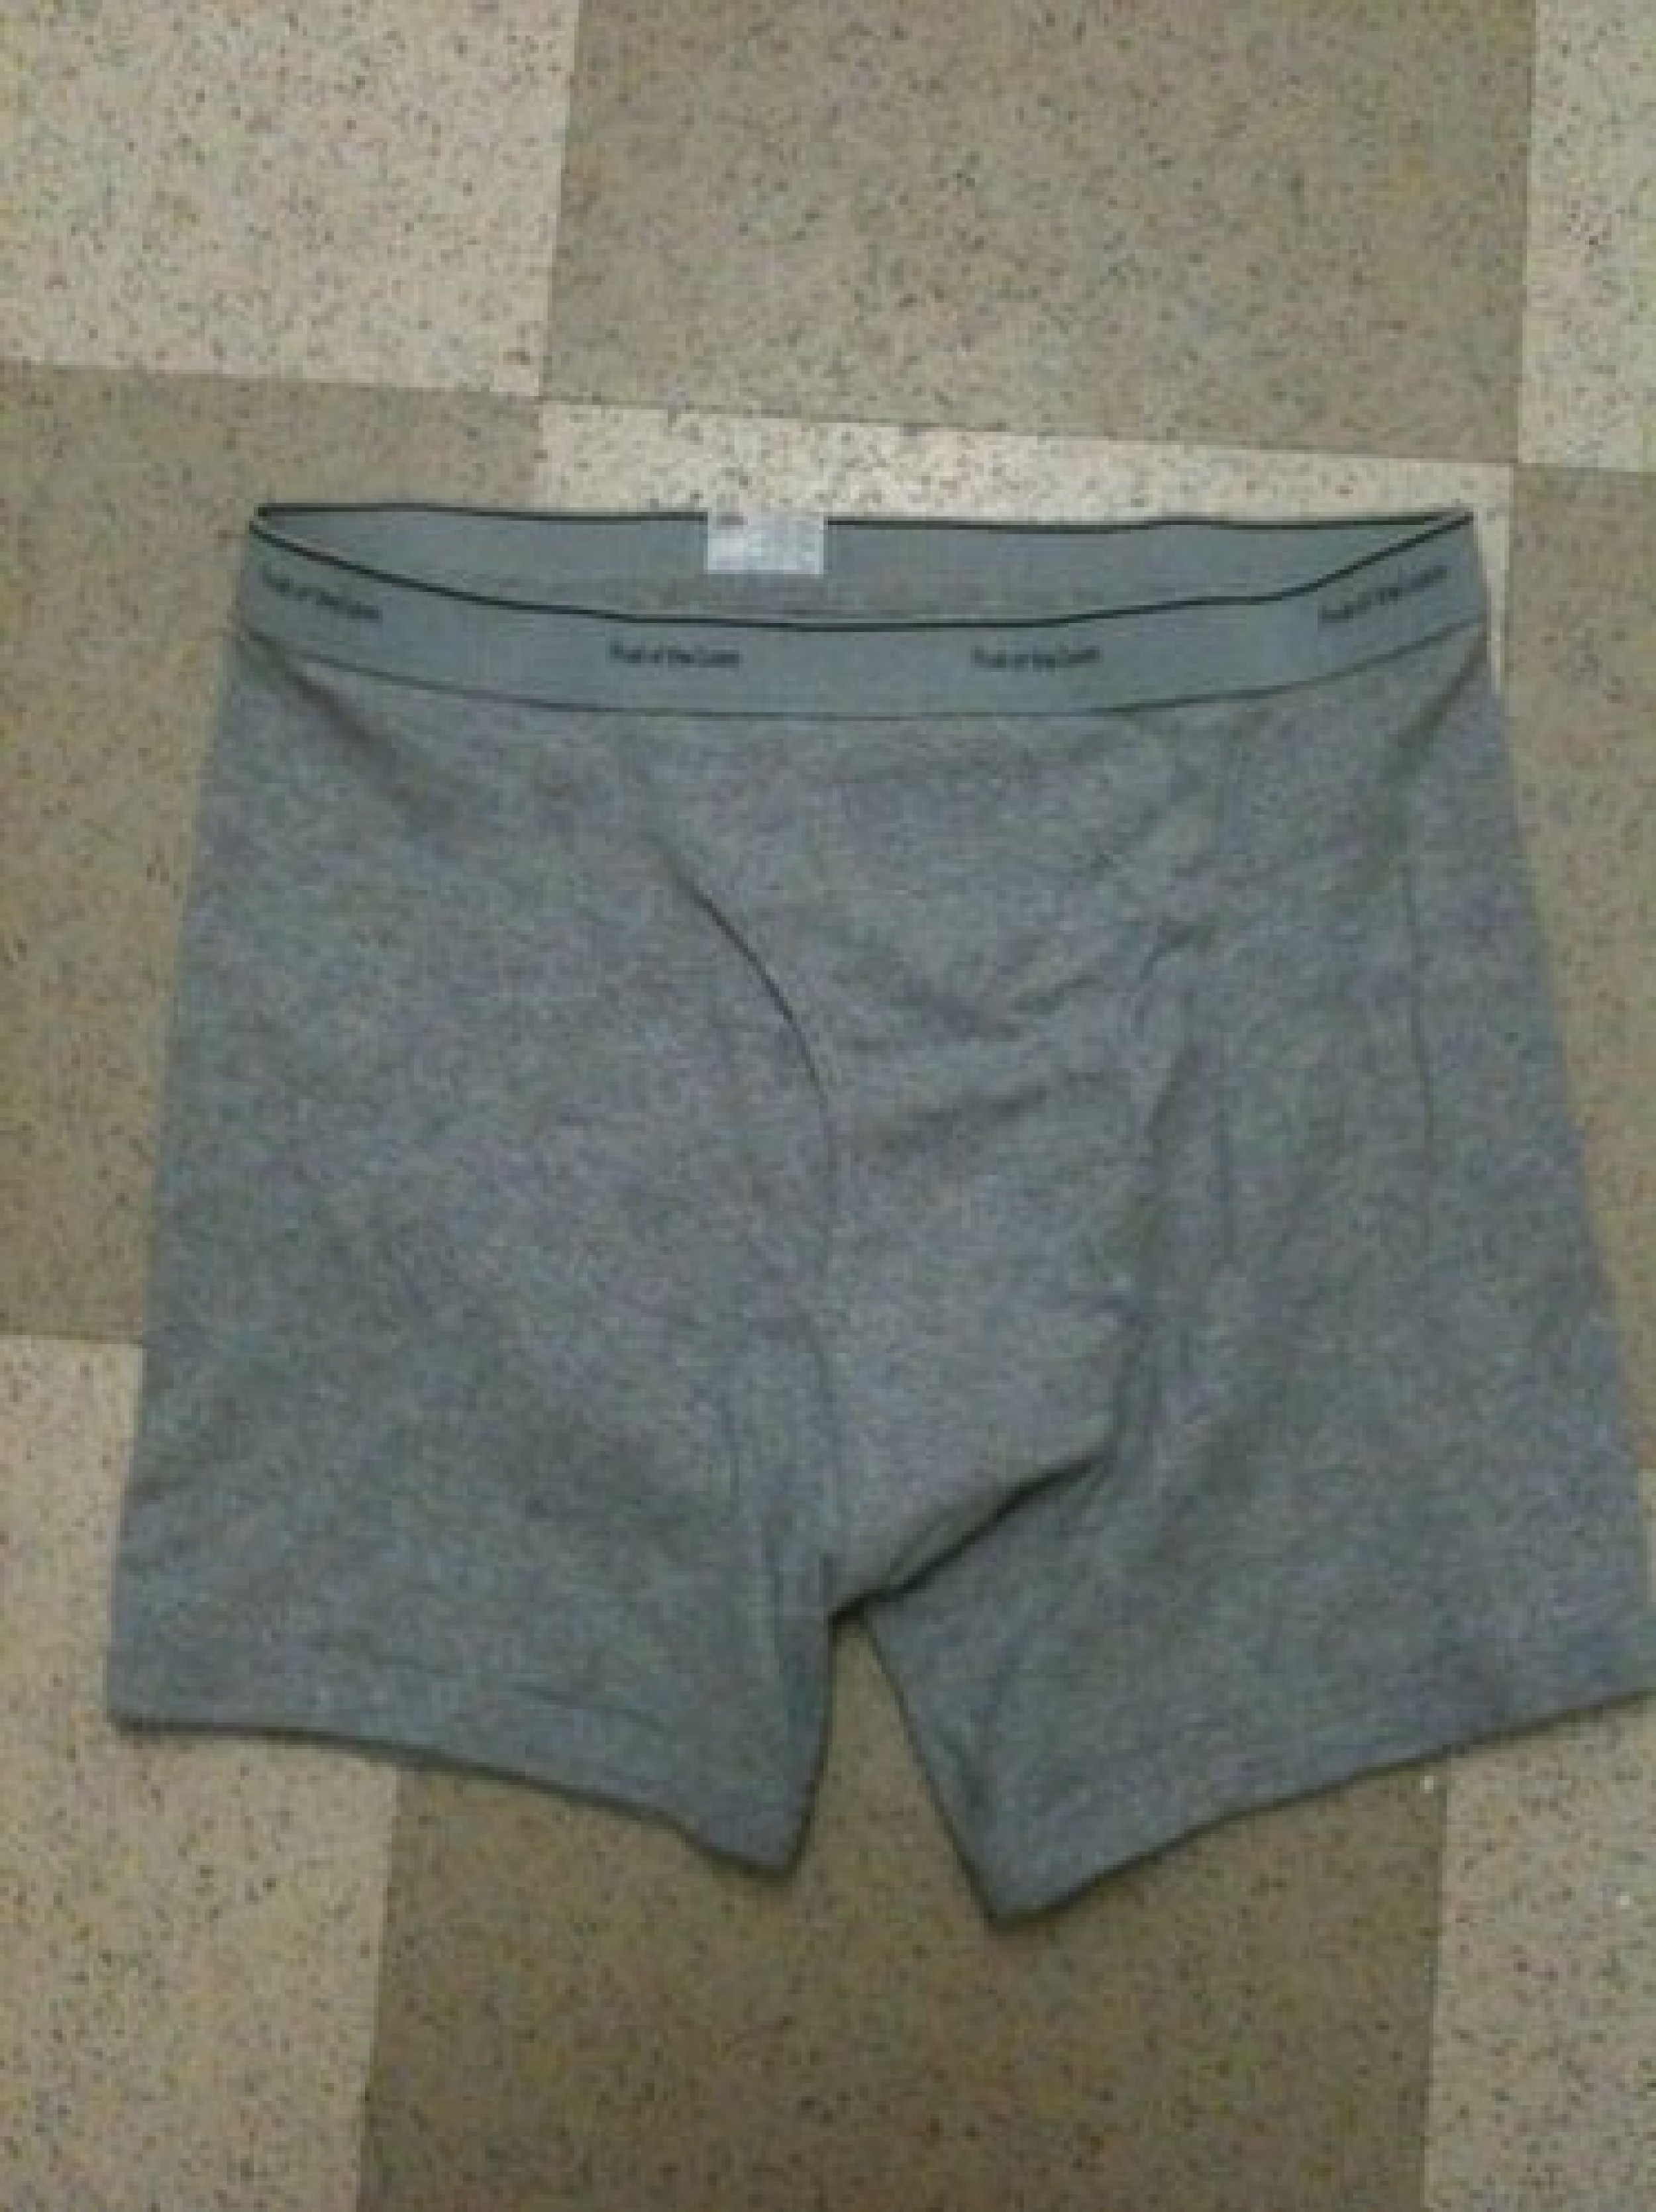 Jeremy Lin underwear